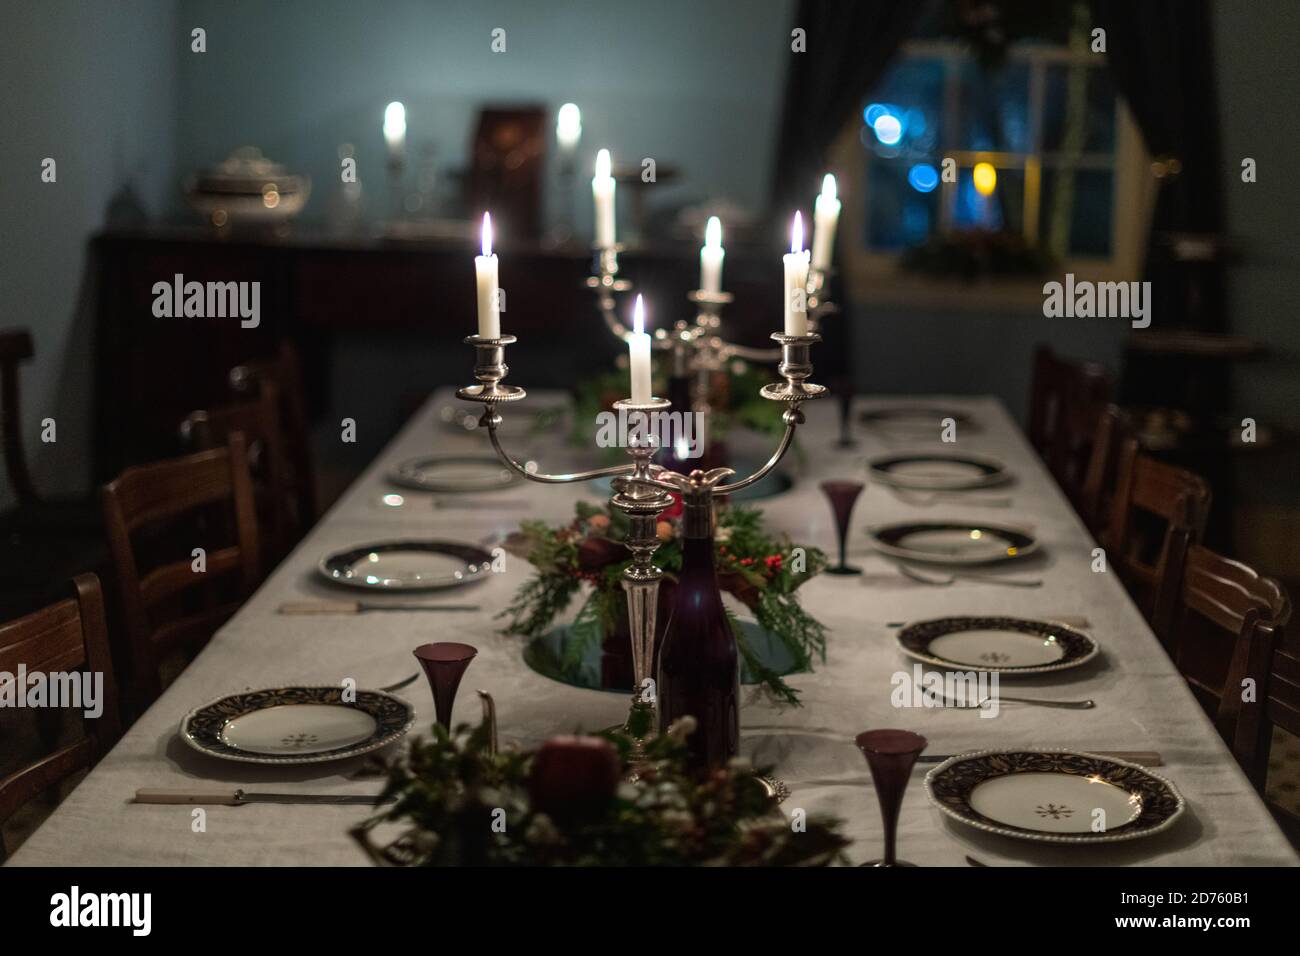 Un tavolo da pranzo formale scuro romantico con piatti cinesi vintage, candelabri d'argento con candele bianche illuminate, una tovaglia bianca, floreale Foto Stock